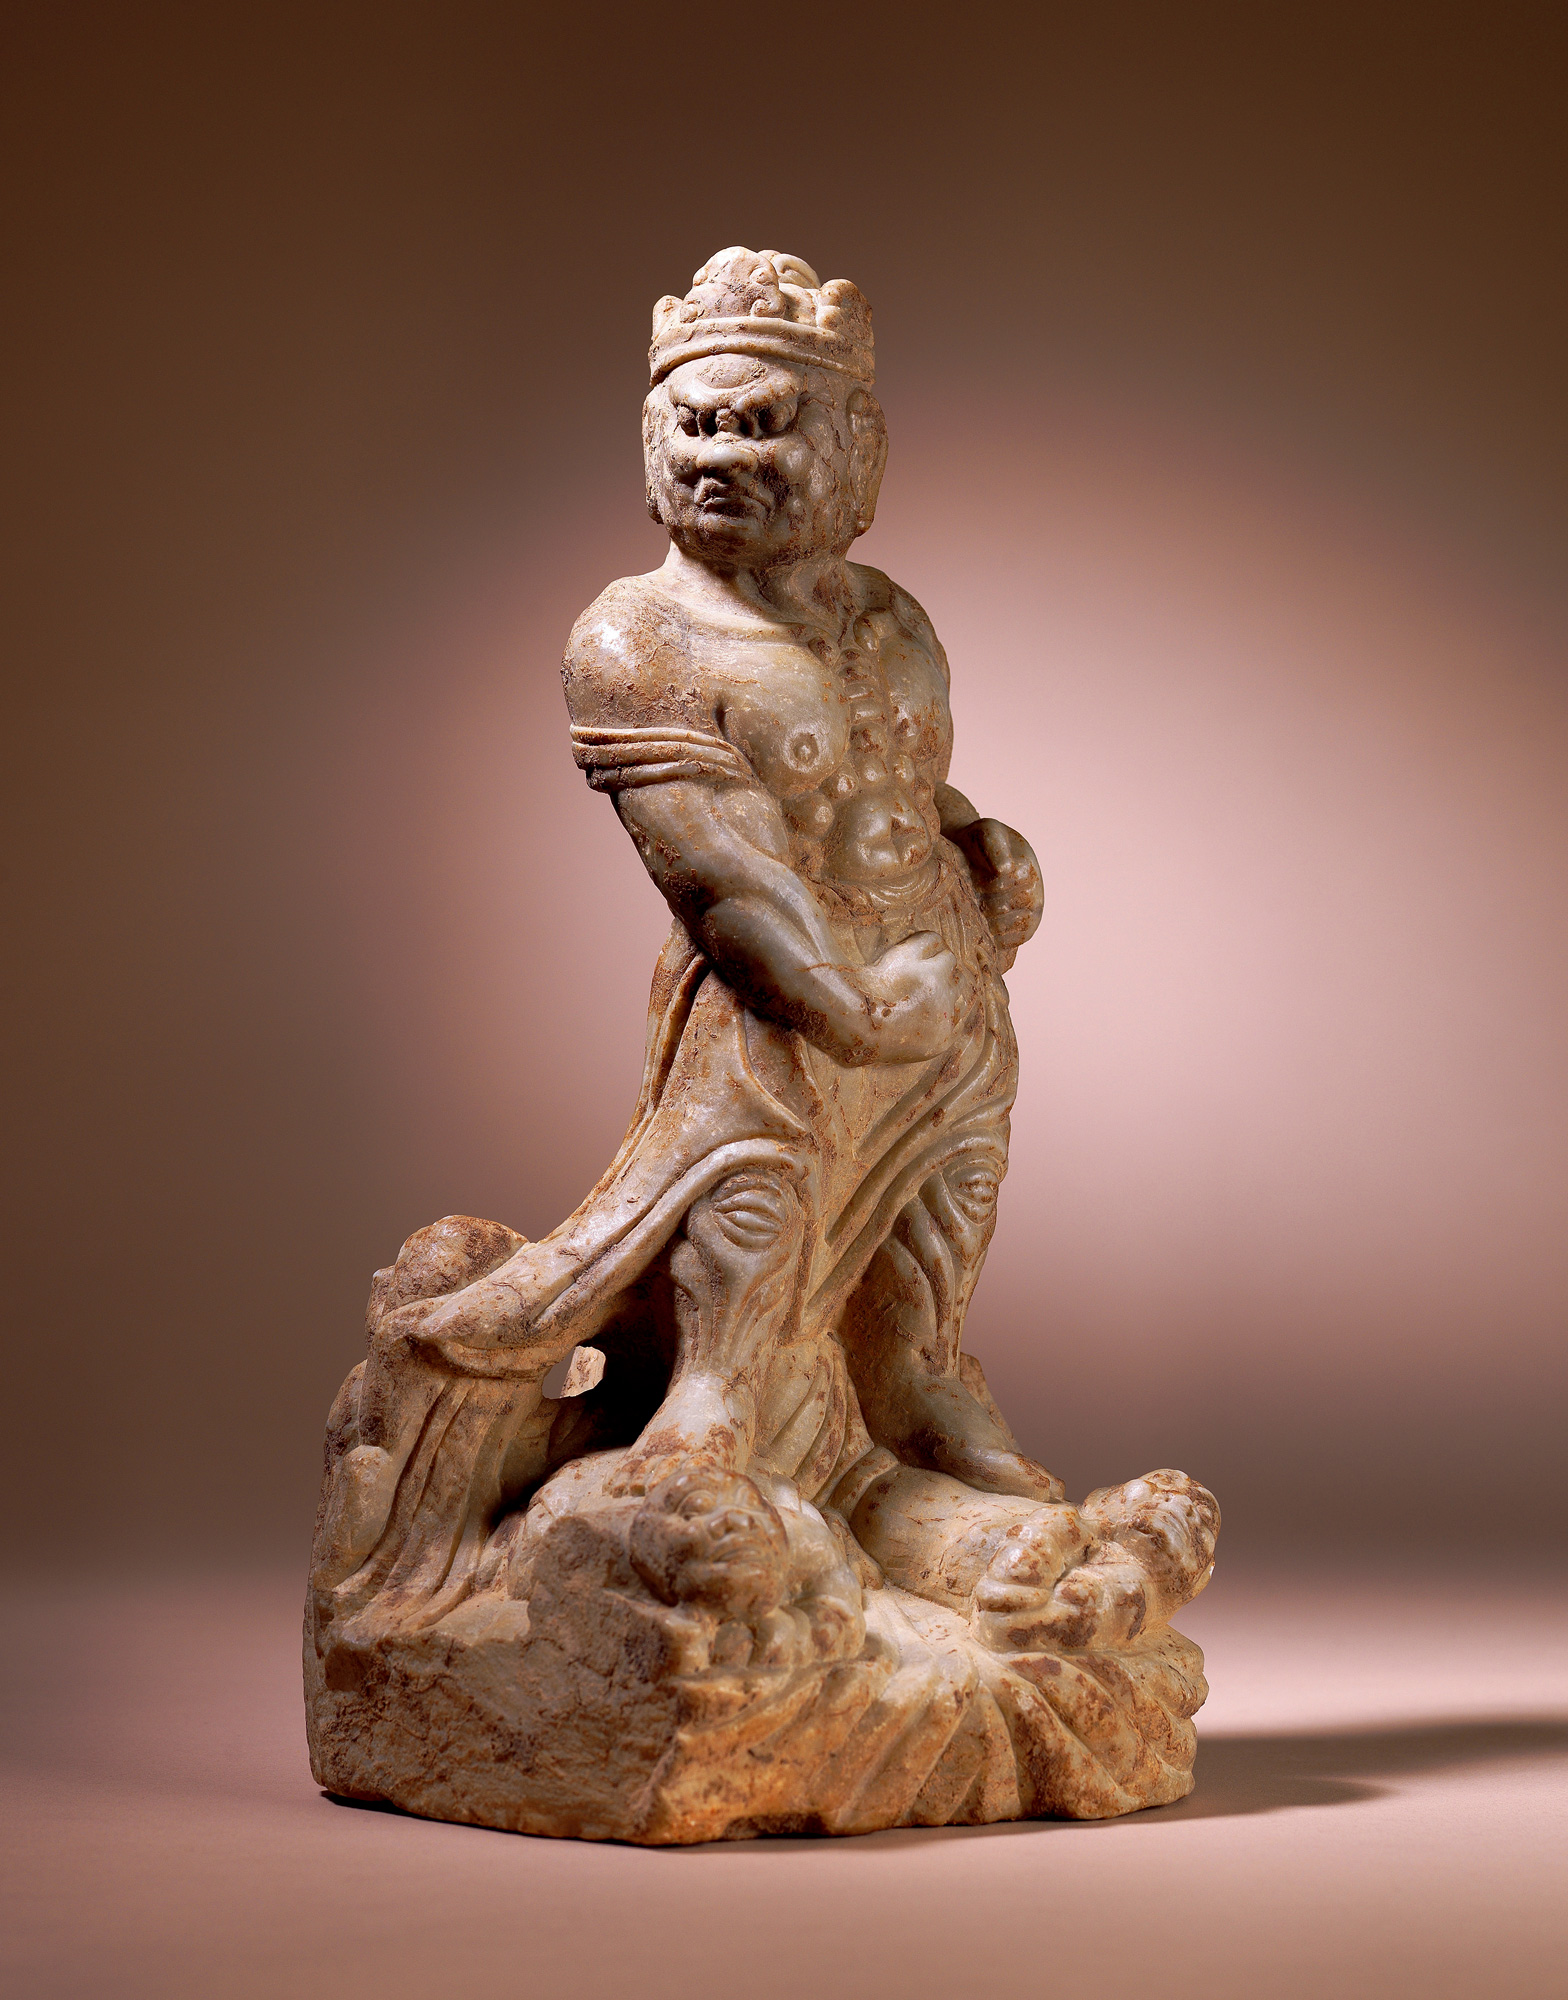 唐石雕力士像 拍卖品 图片 价格 鉴赏 佛教文物其它 雅昌艺术品拍卖网